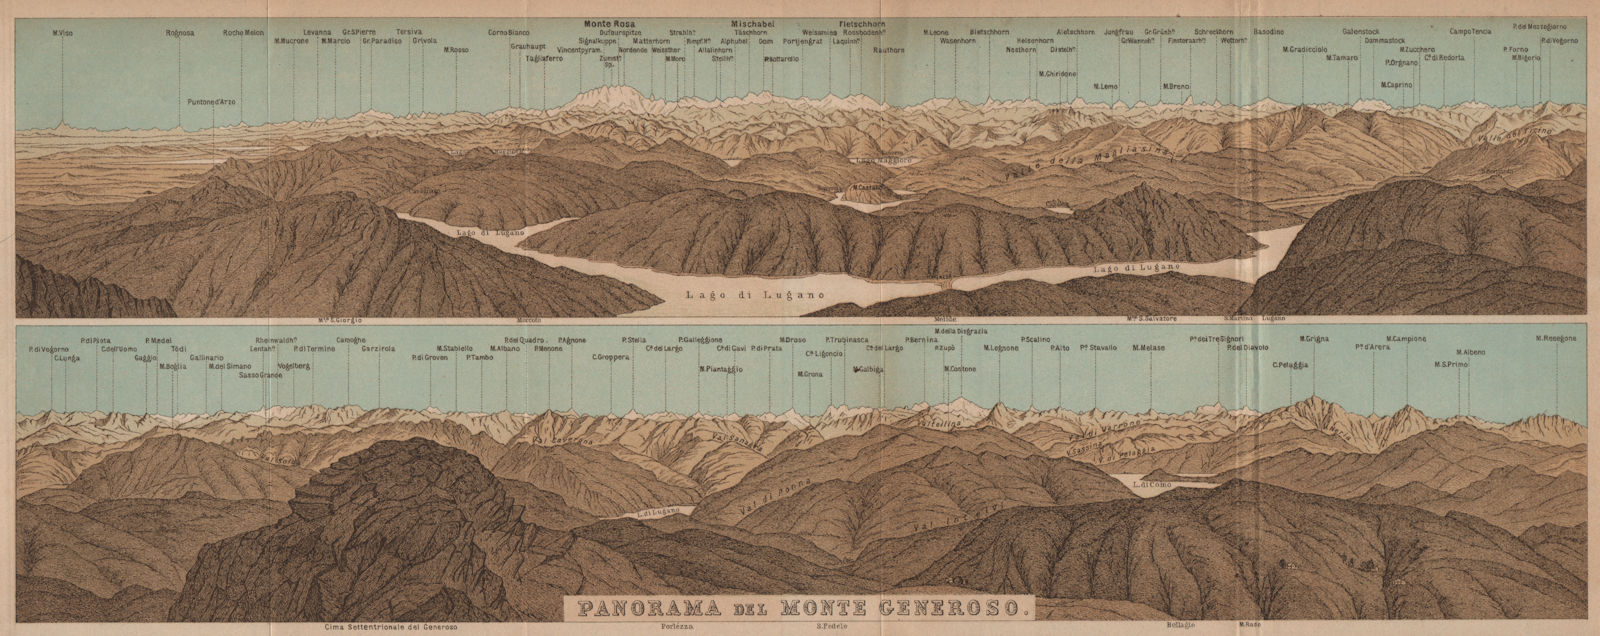 MONTE GENEROSO PANORAMA. Lugano Como Maggiore Rosa Mischabel Disgrazia 1907 map